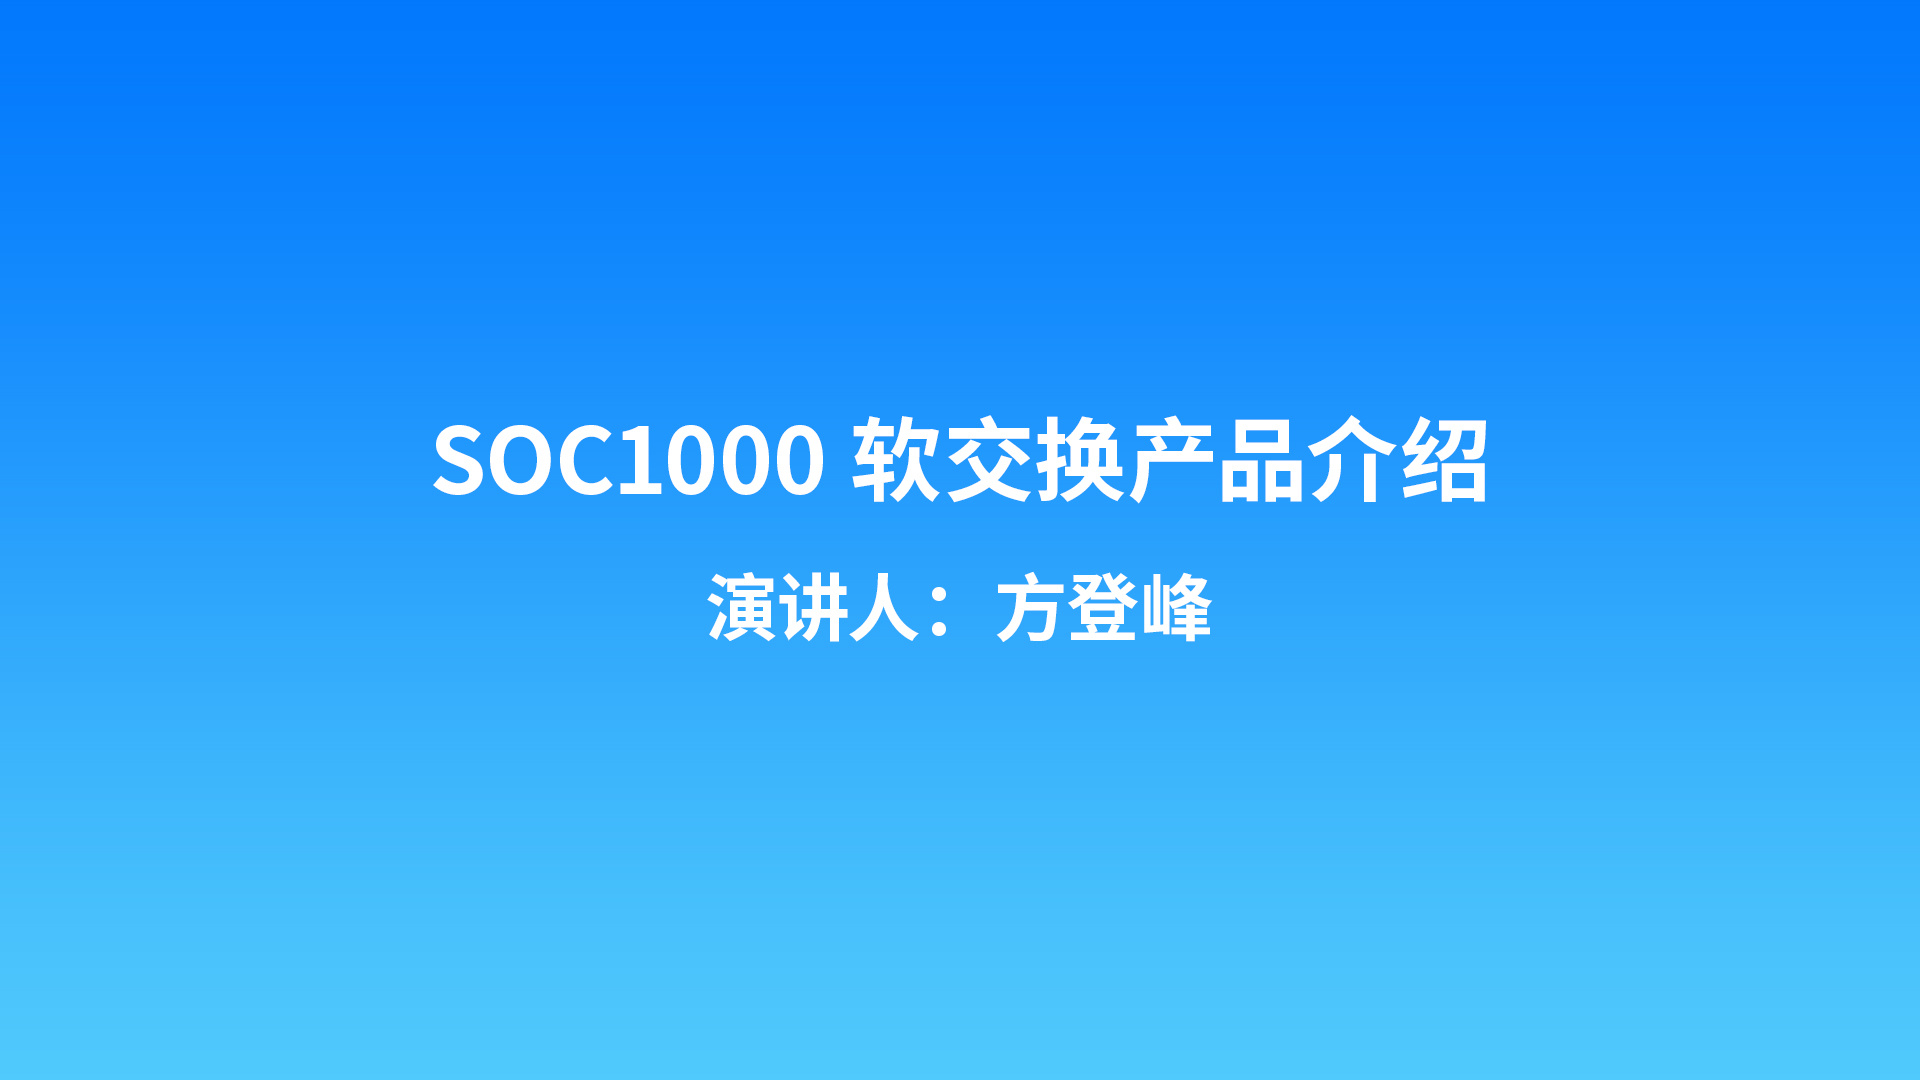 SOC1000软交换产品介绍